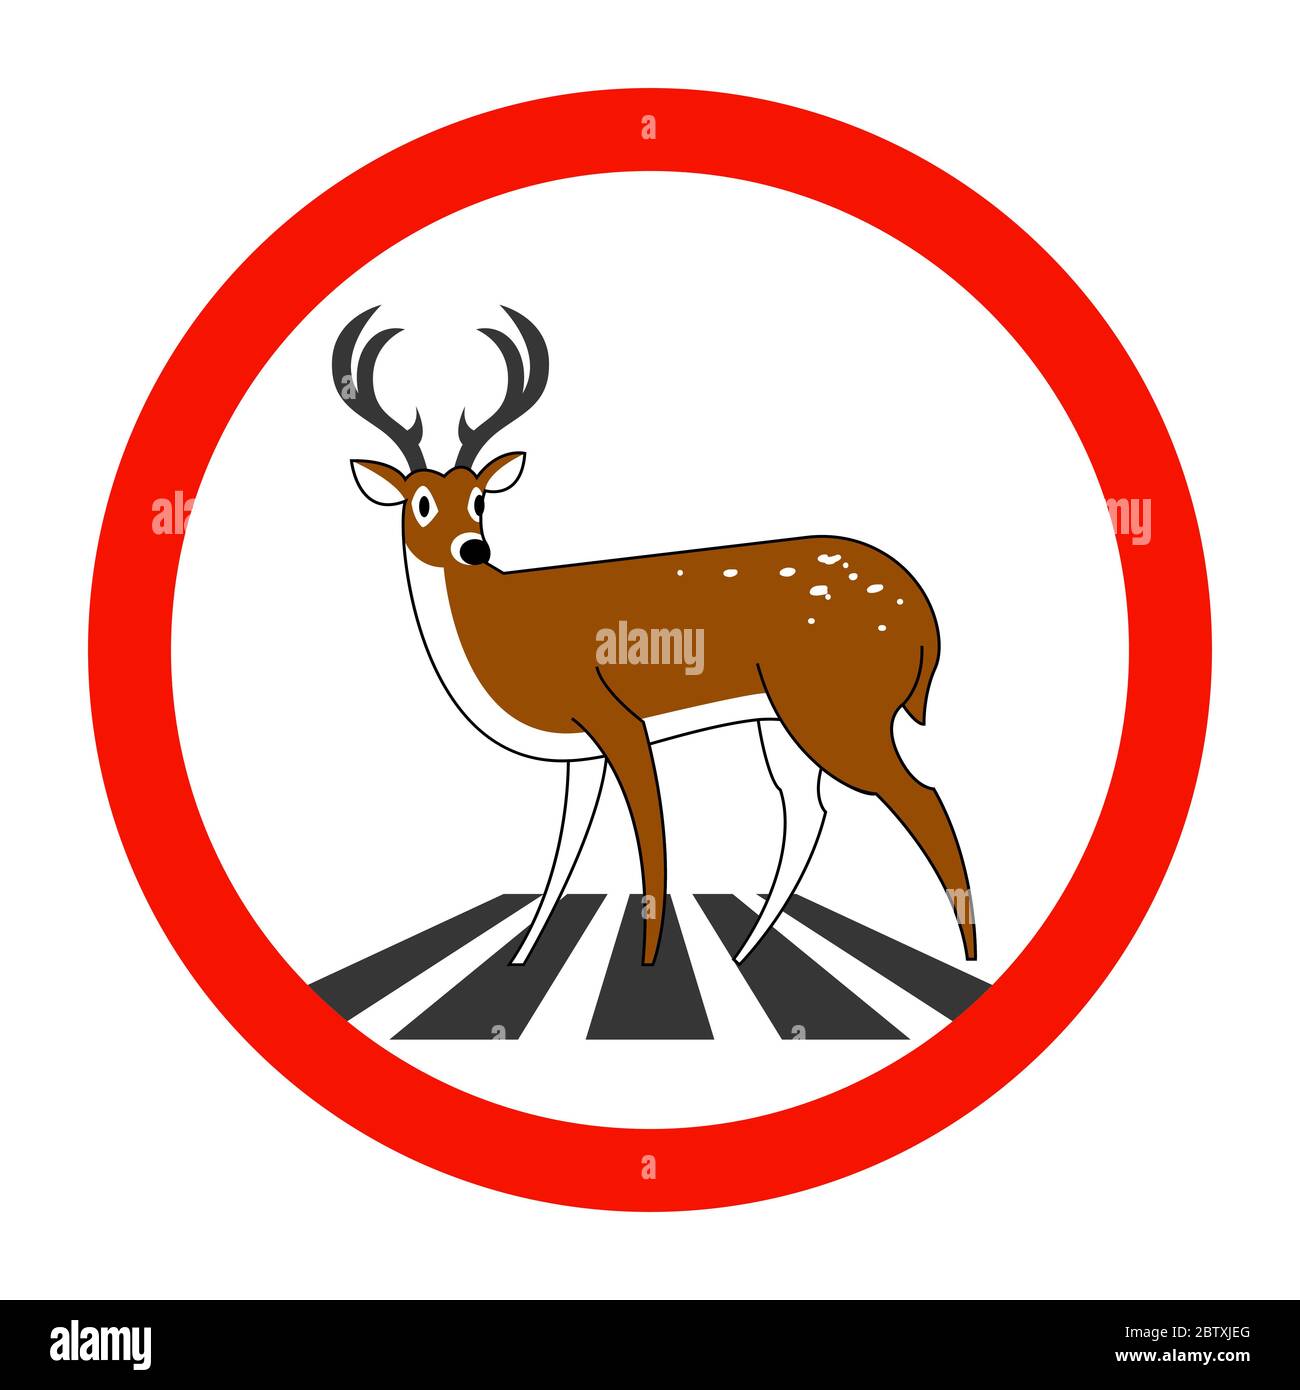 Что означает знак оленя. Знак олень. Дорожный знак олень. Знак олени на дороге. Олень символ.